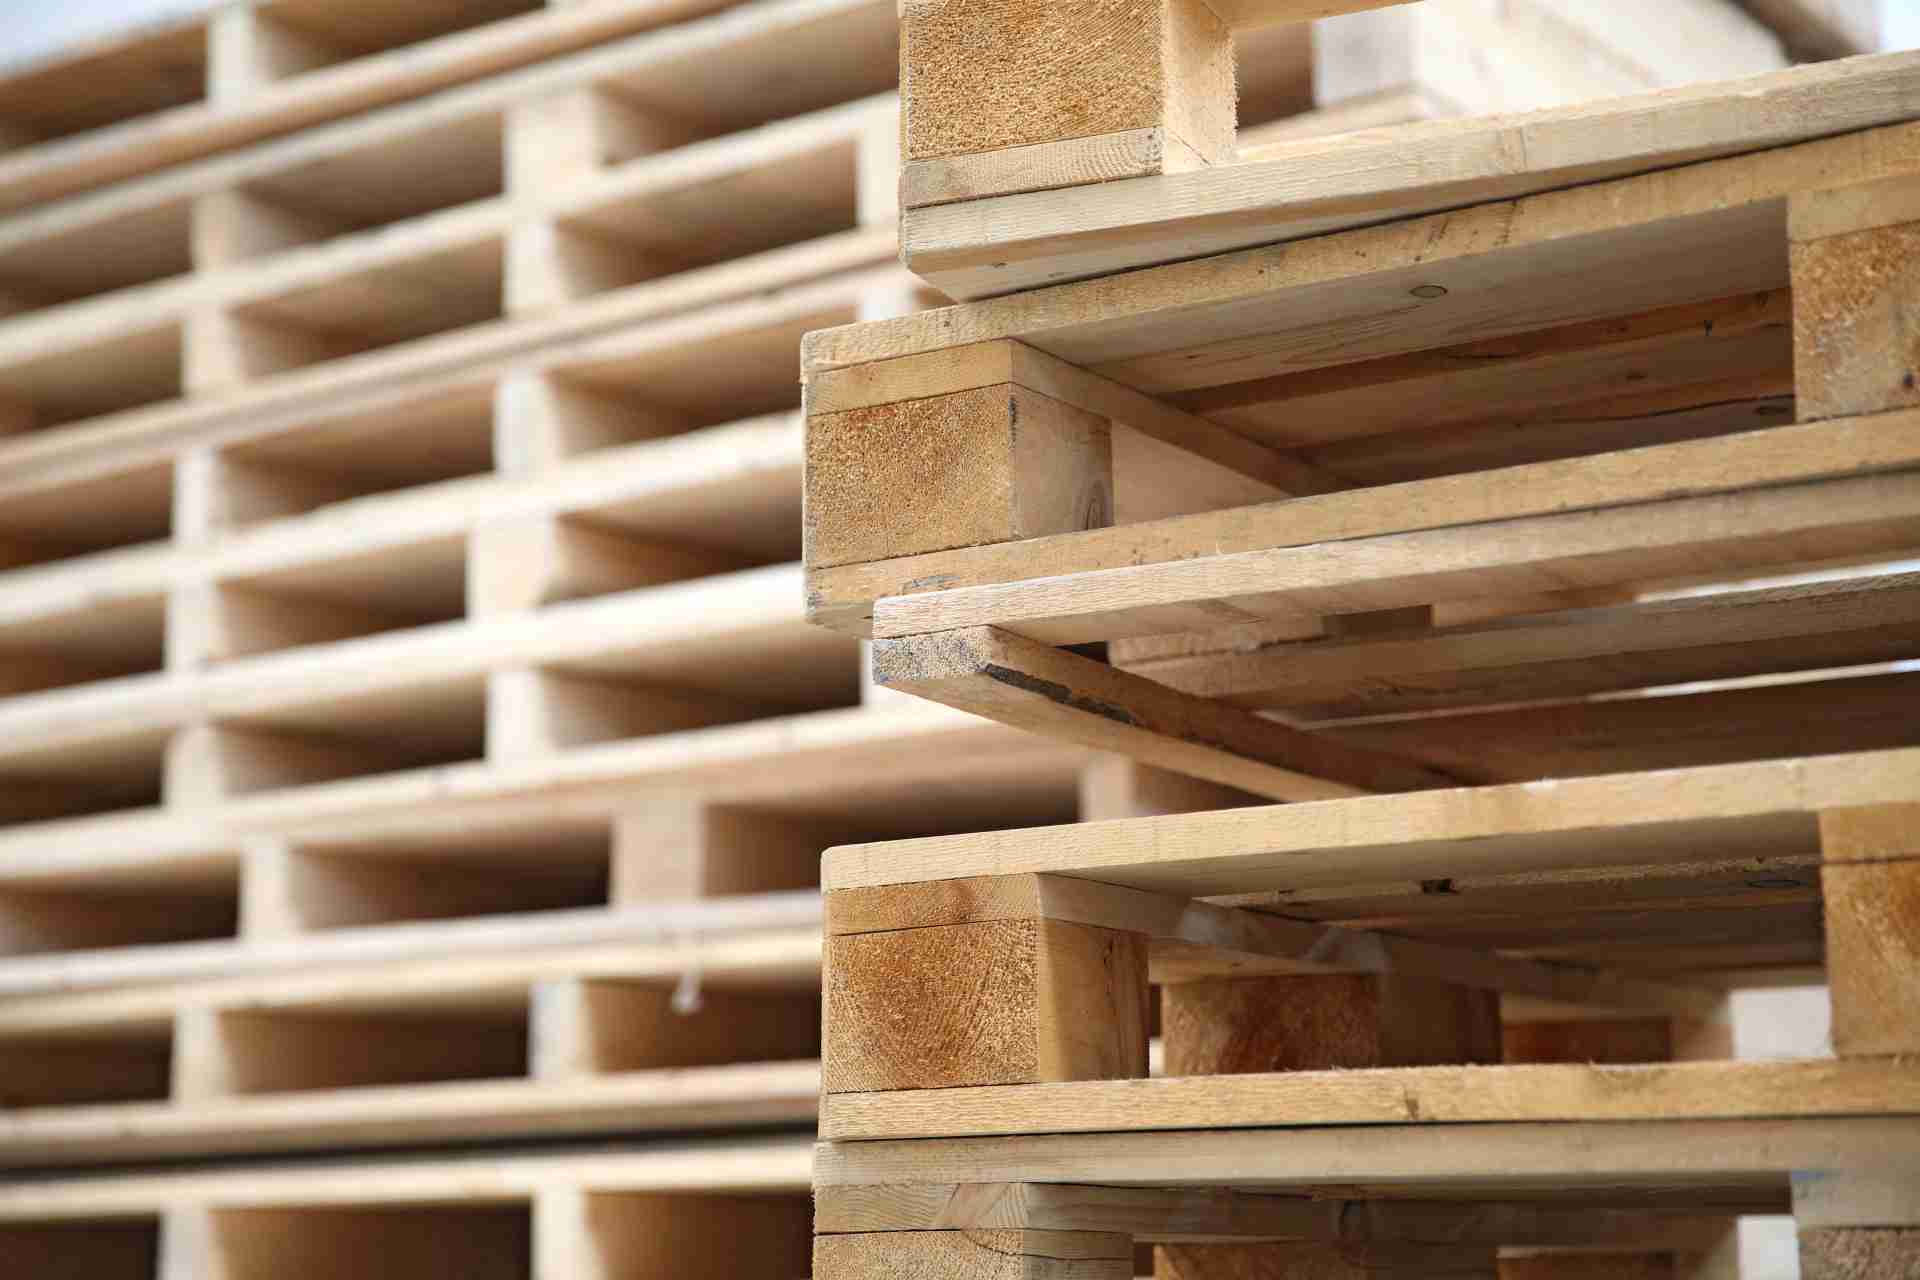 Comprar palets de madera: ventajas